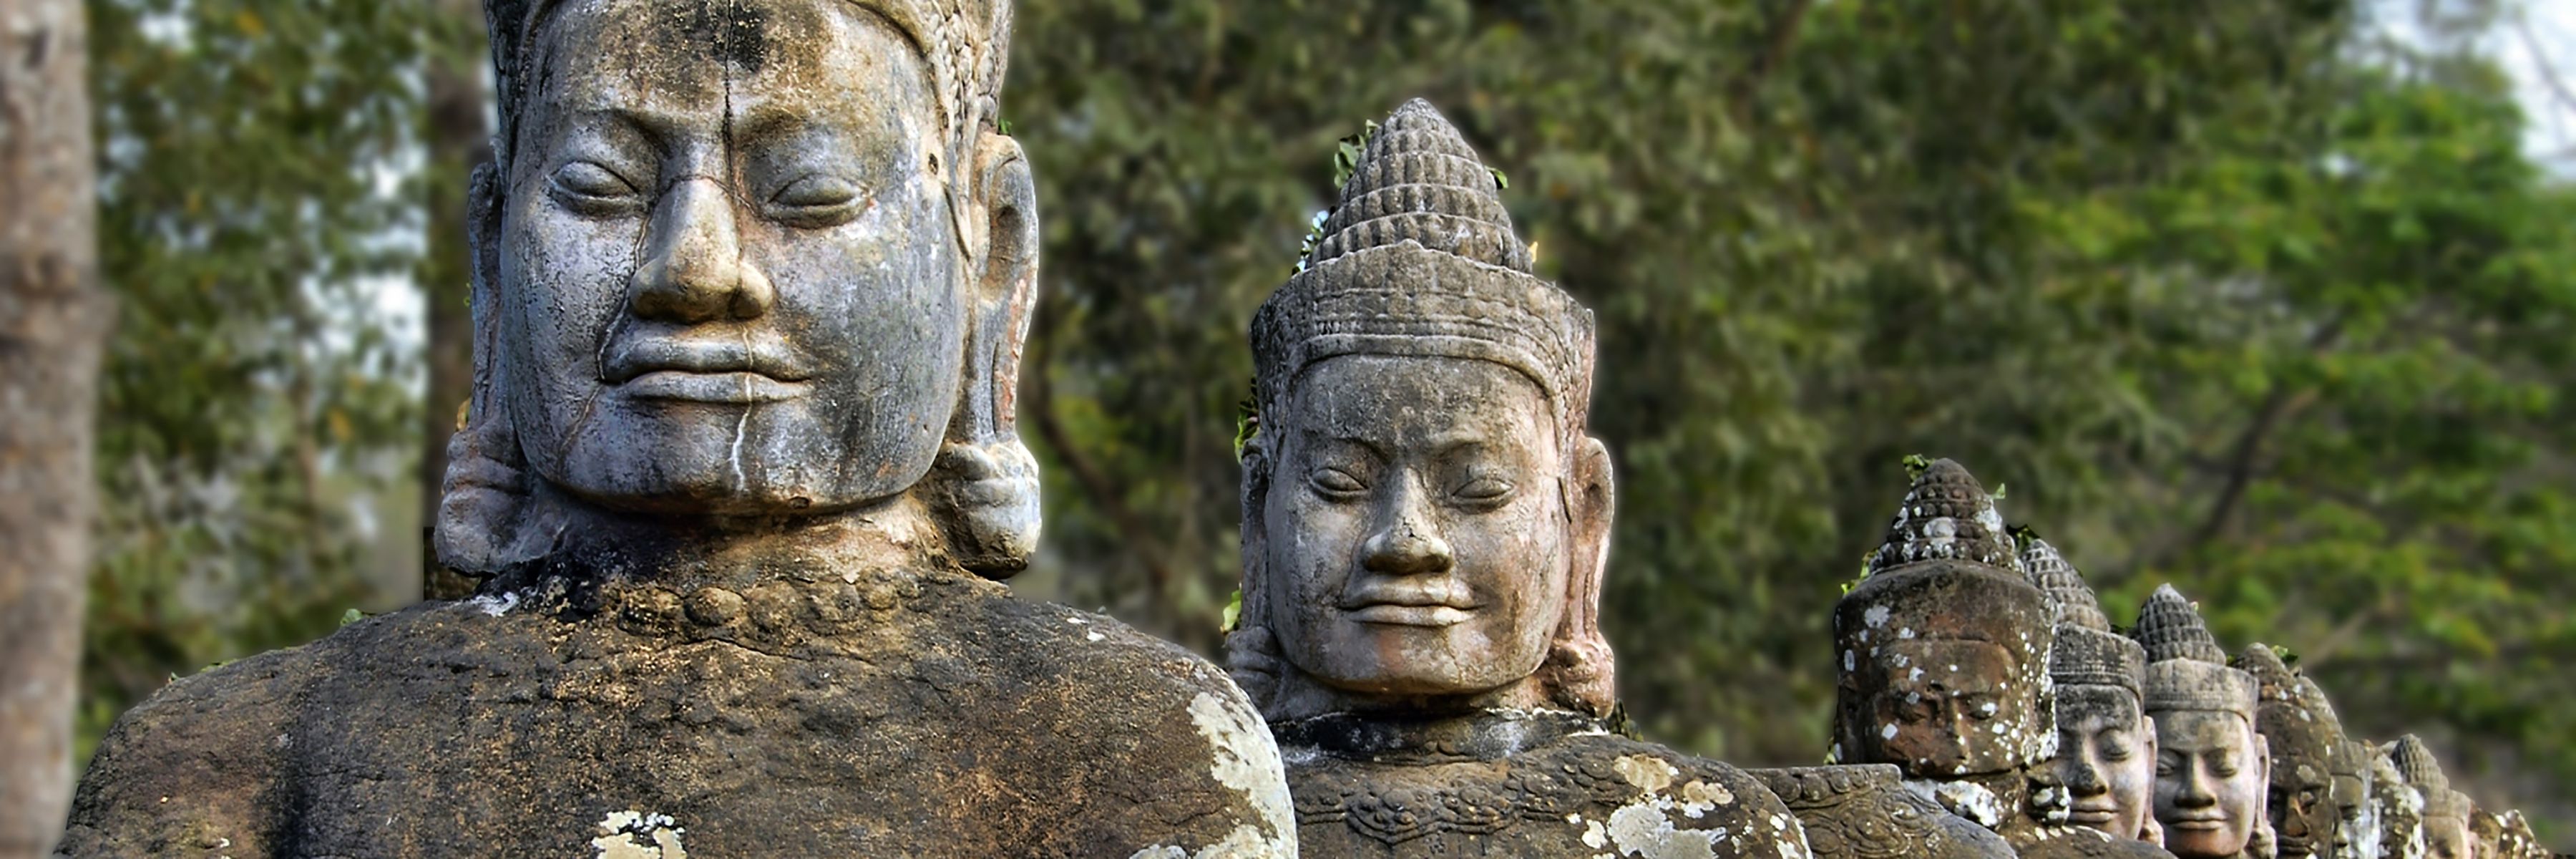 Kambodscha Reise intensiv - im Königreich der Khmer